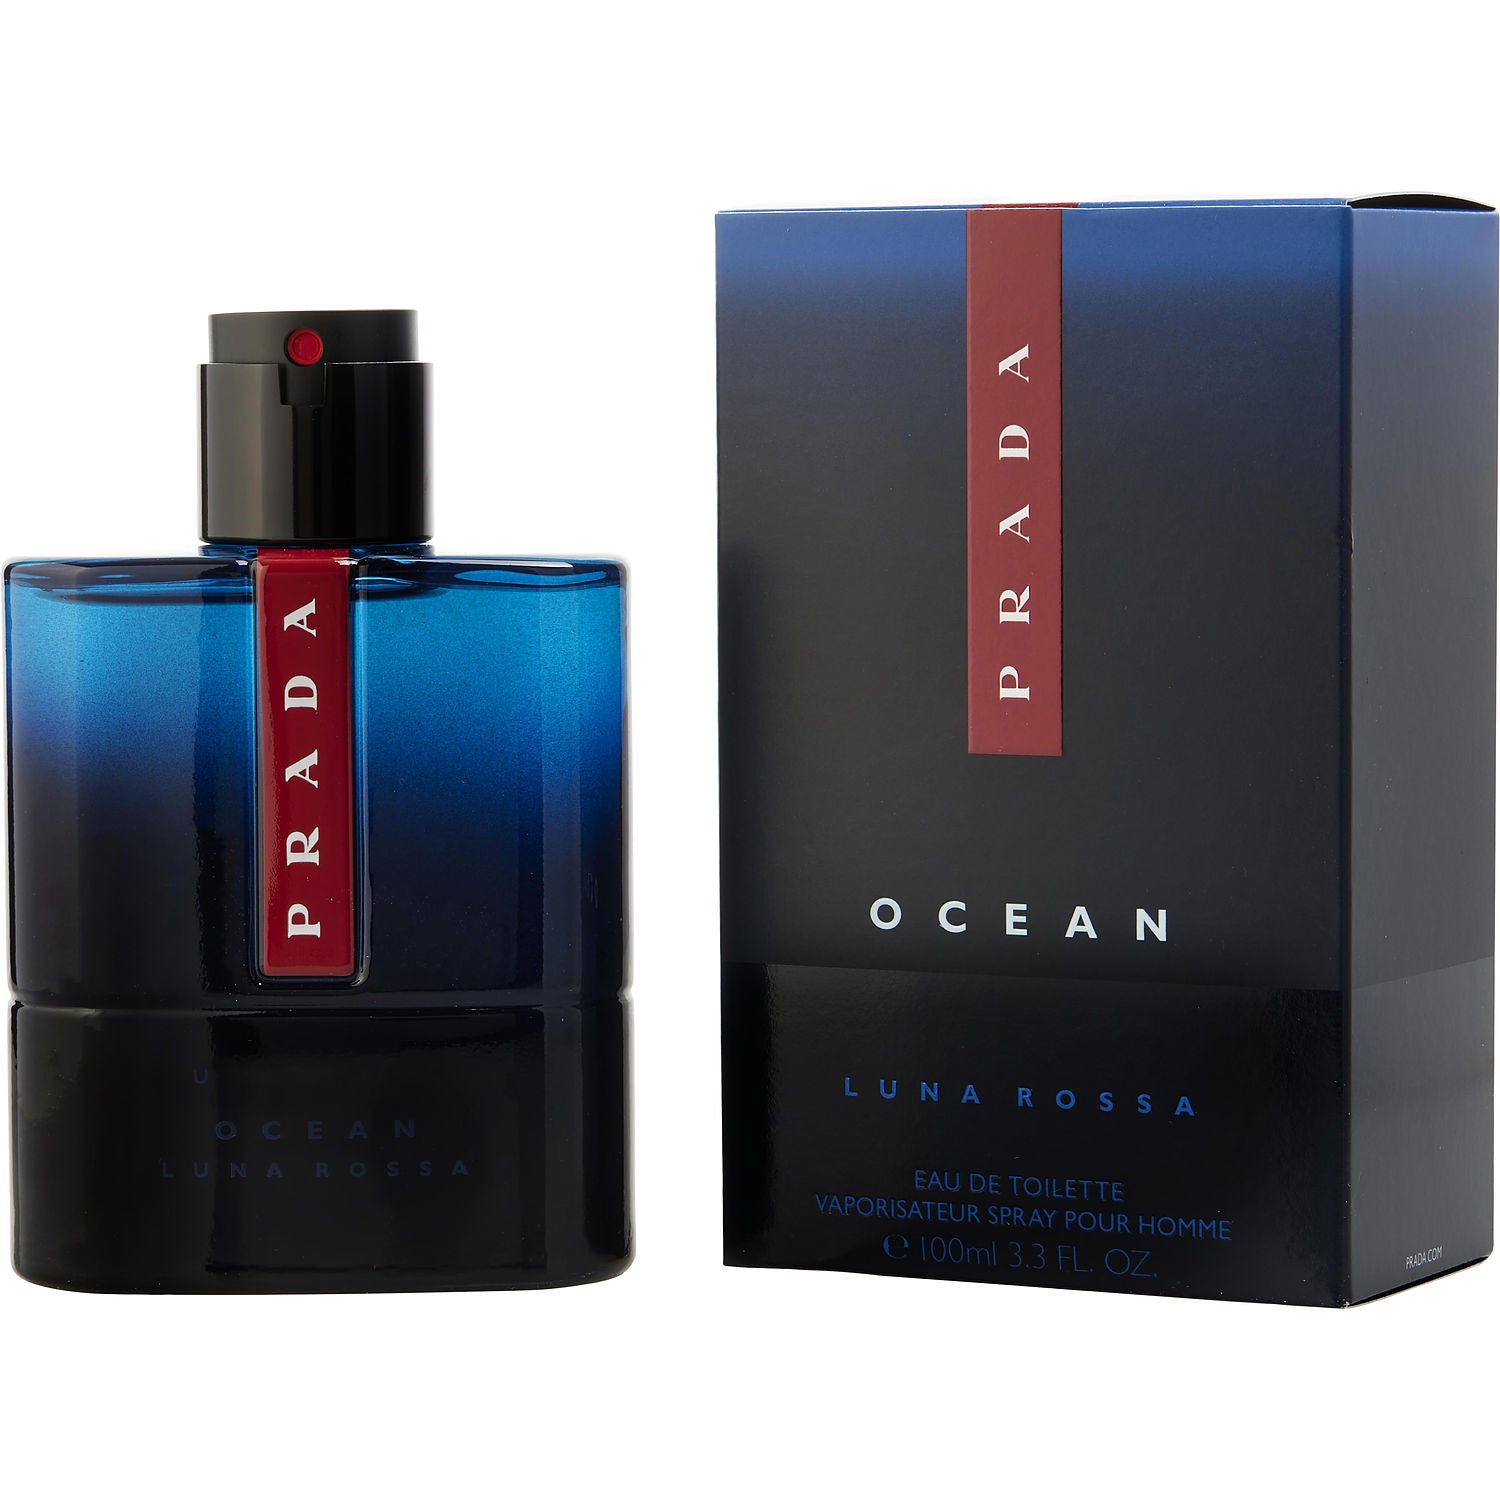 Luna Rossa Ocean by Prada 3.3 oz EDT Spray for Men